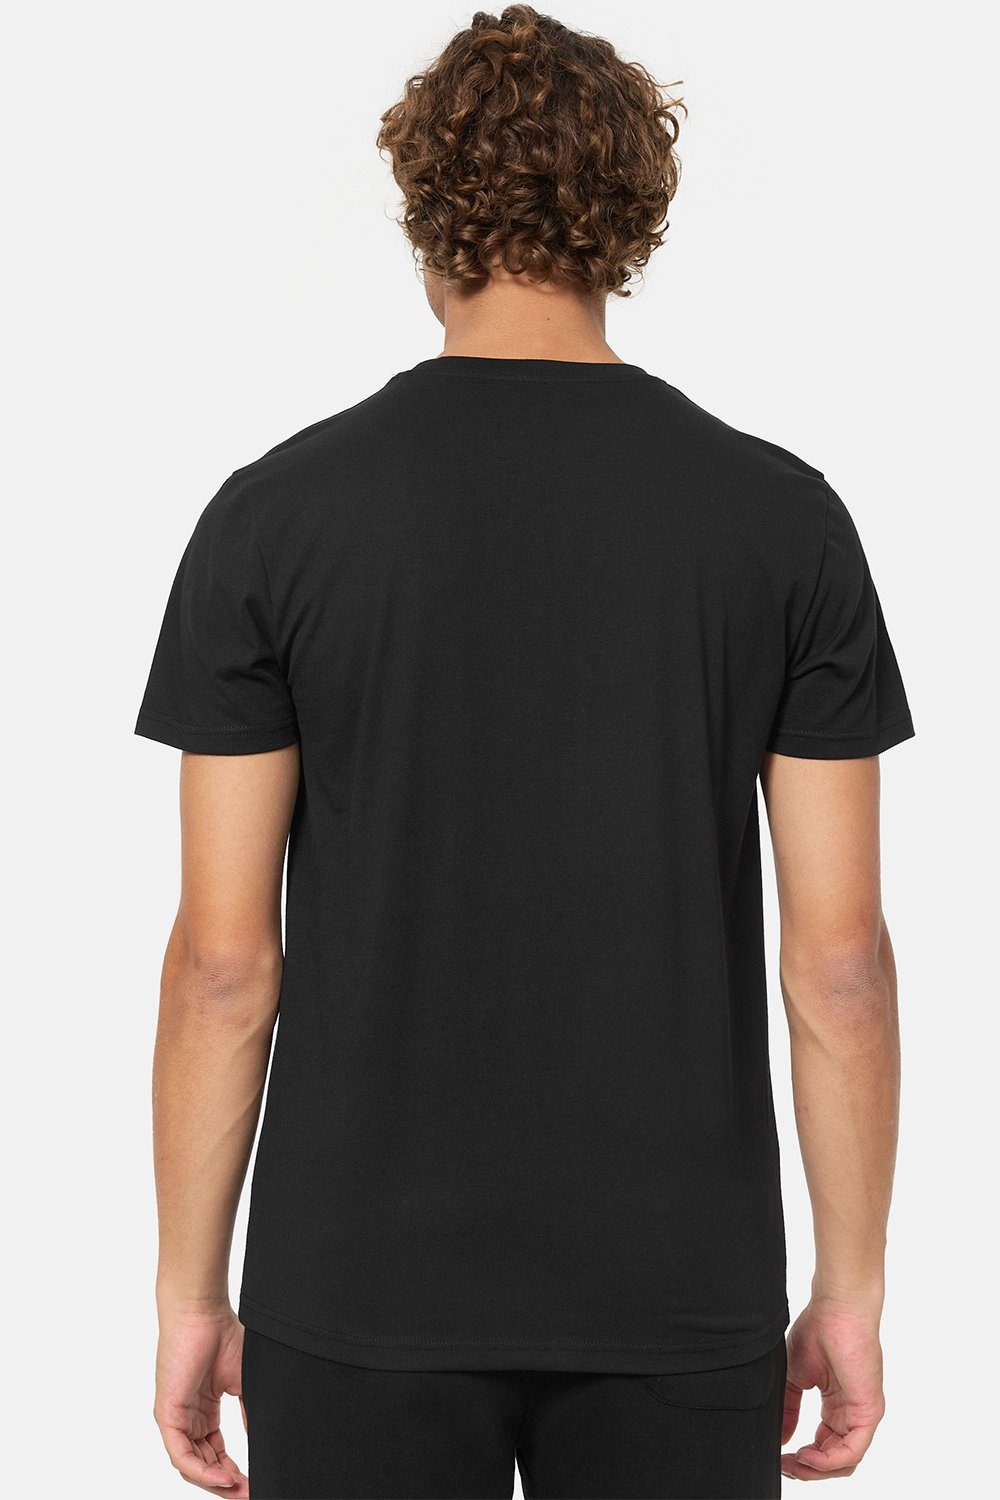 DERVAIG Lonsdale Marl Grey/Black T-Shirt